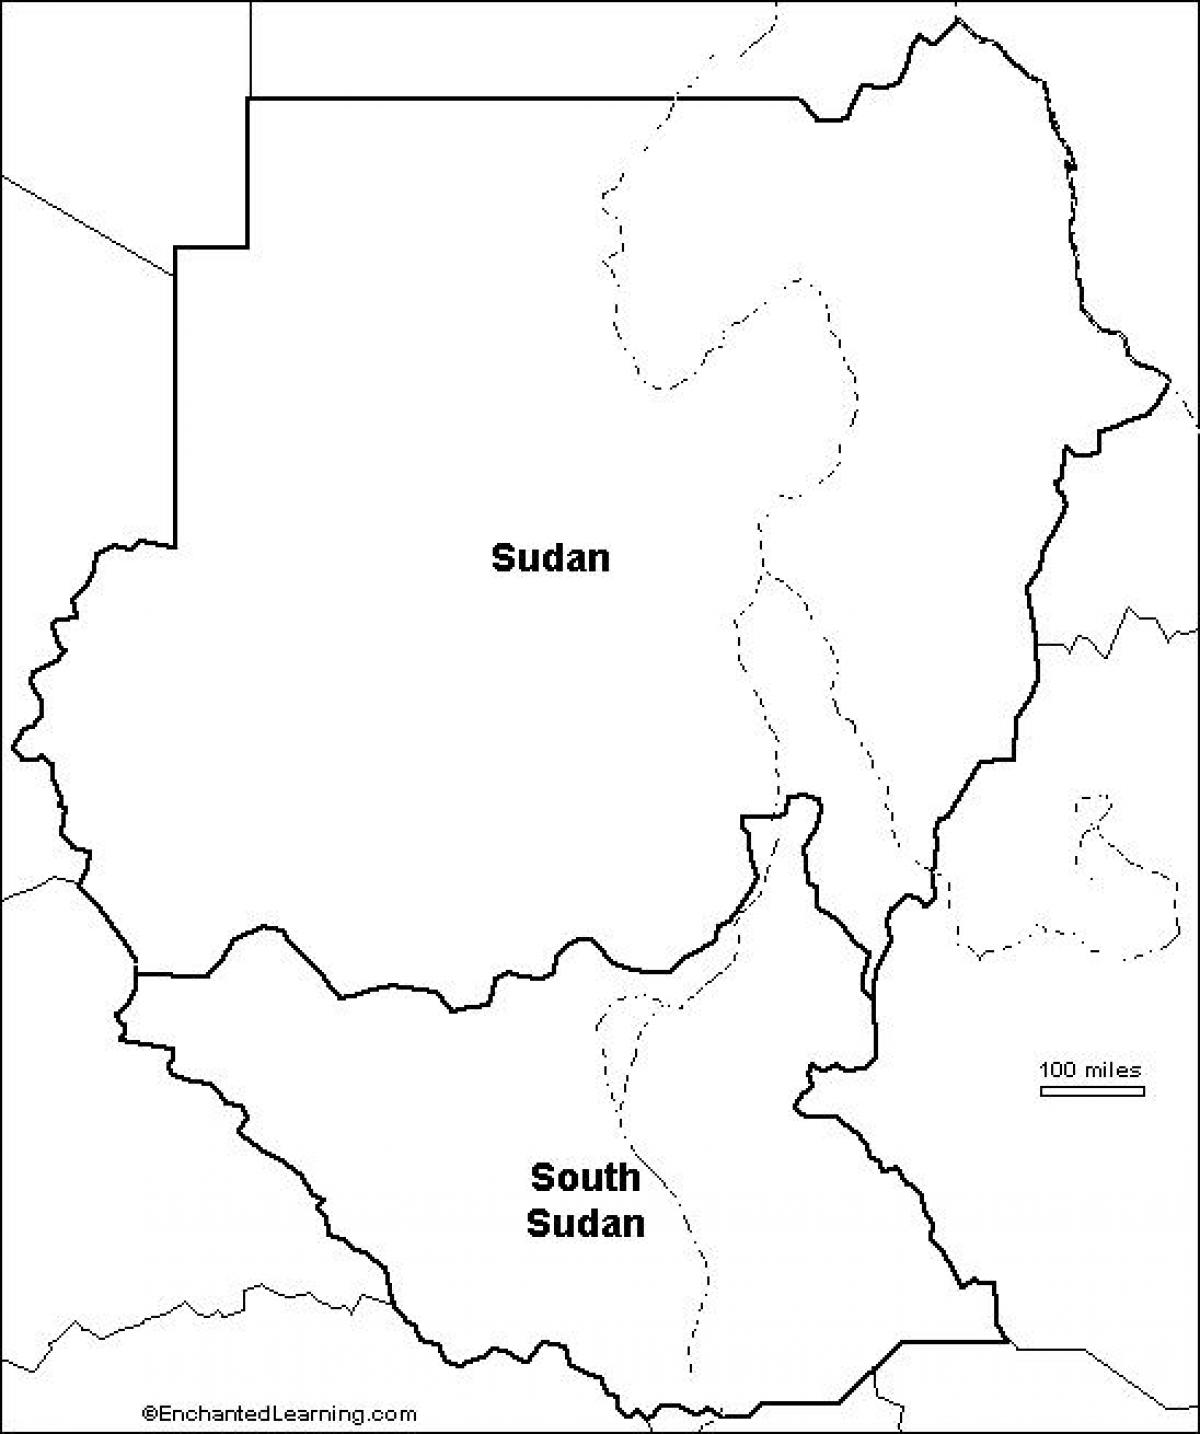 नक्शे के रिक्त सूडान